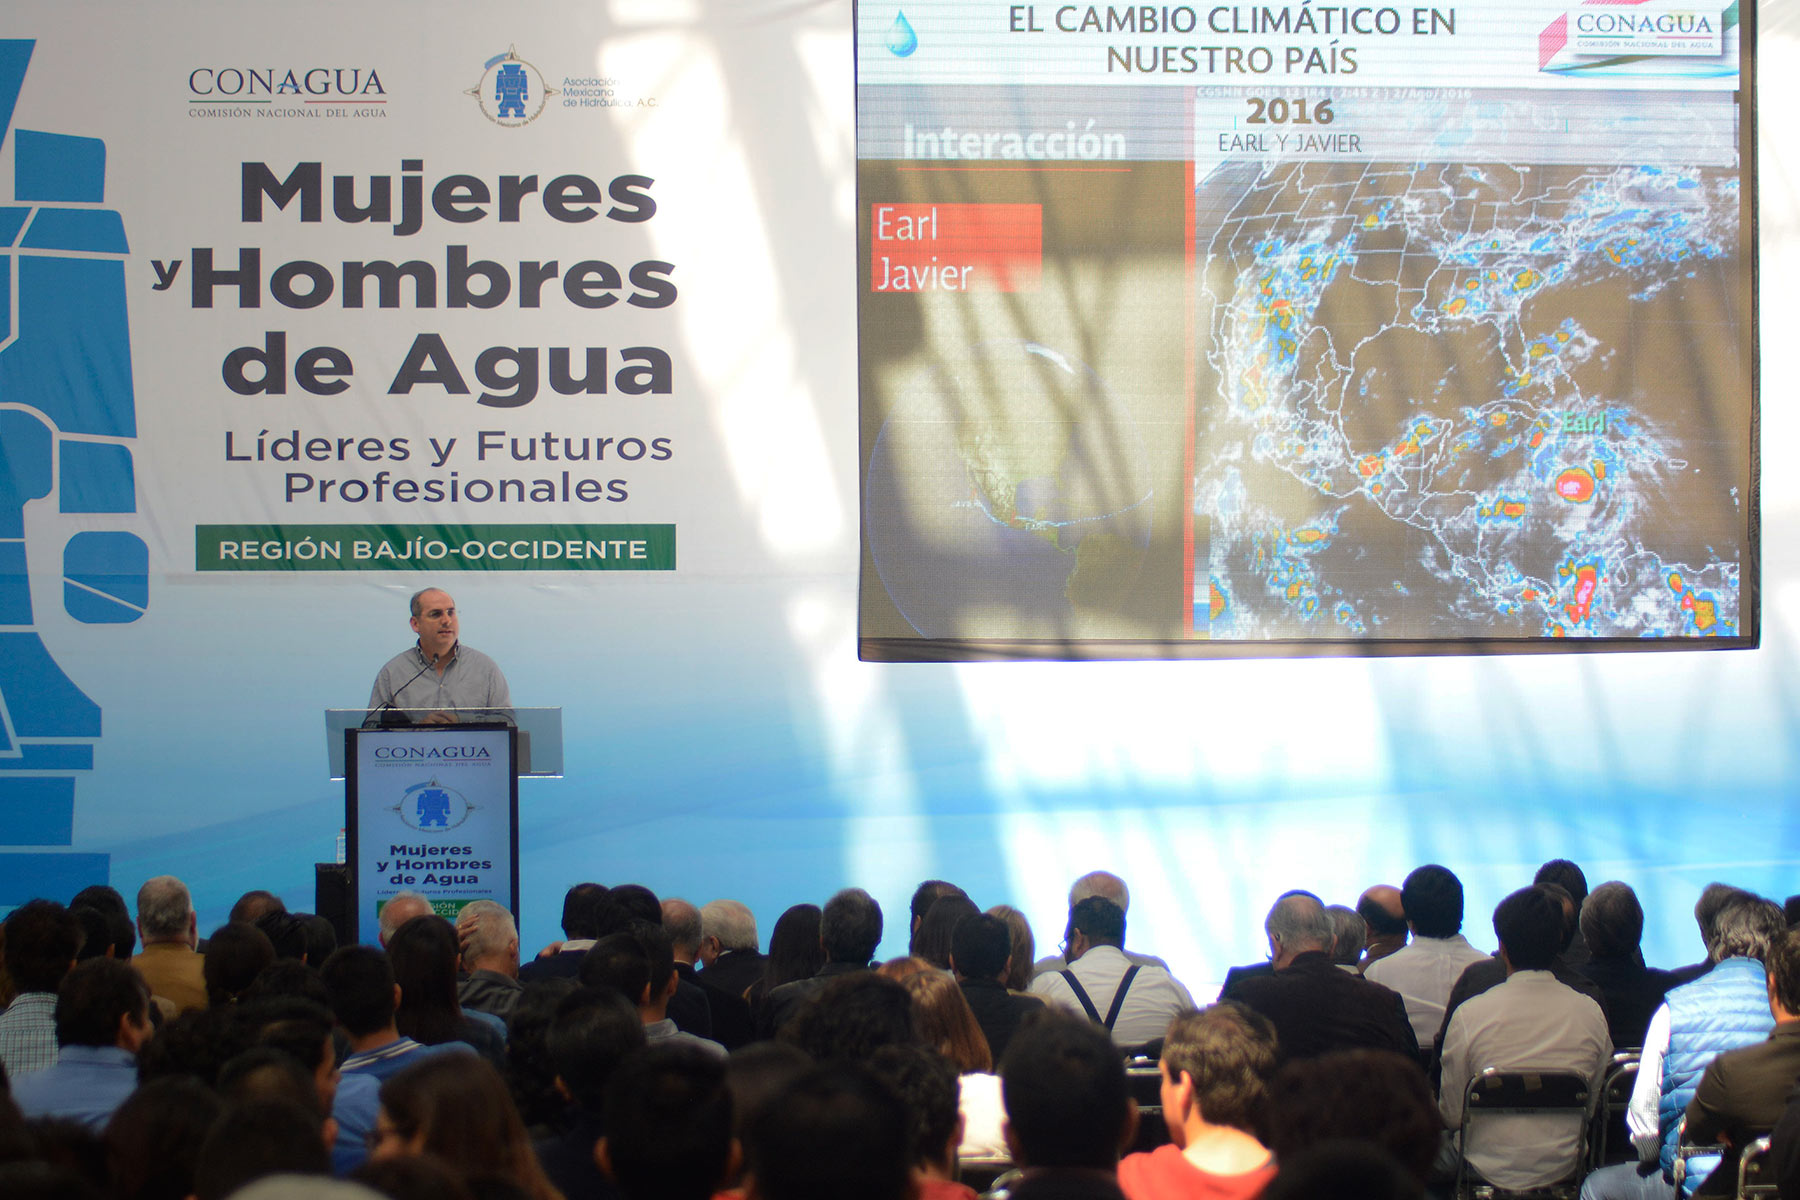 Especializar a los jóvenes en los asuntos del agua permitirá afrontar los retos hídricos del futuro: Roberto Ramírez de la Parra